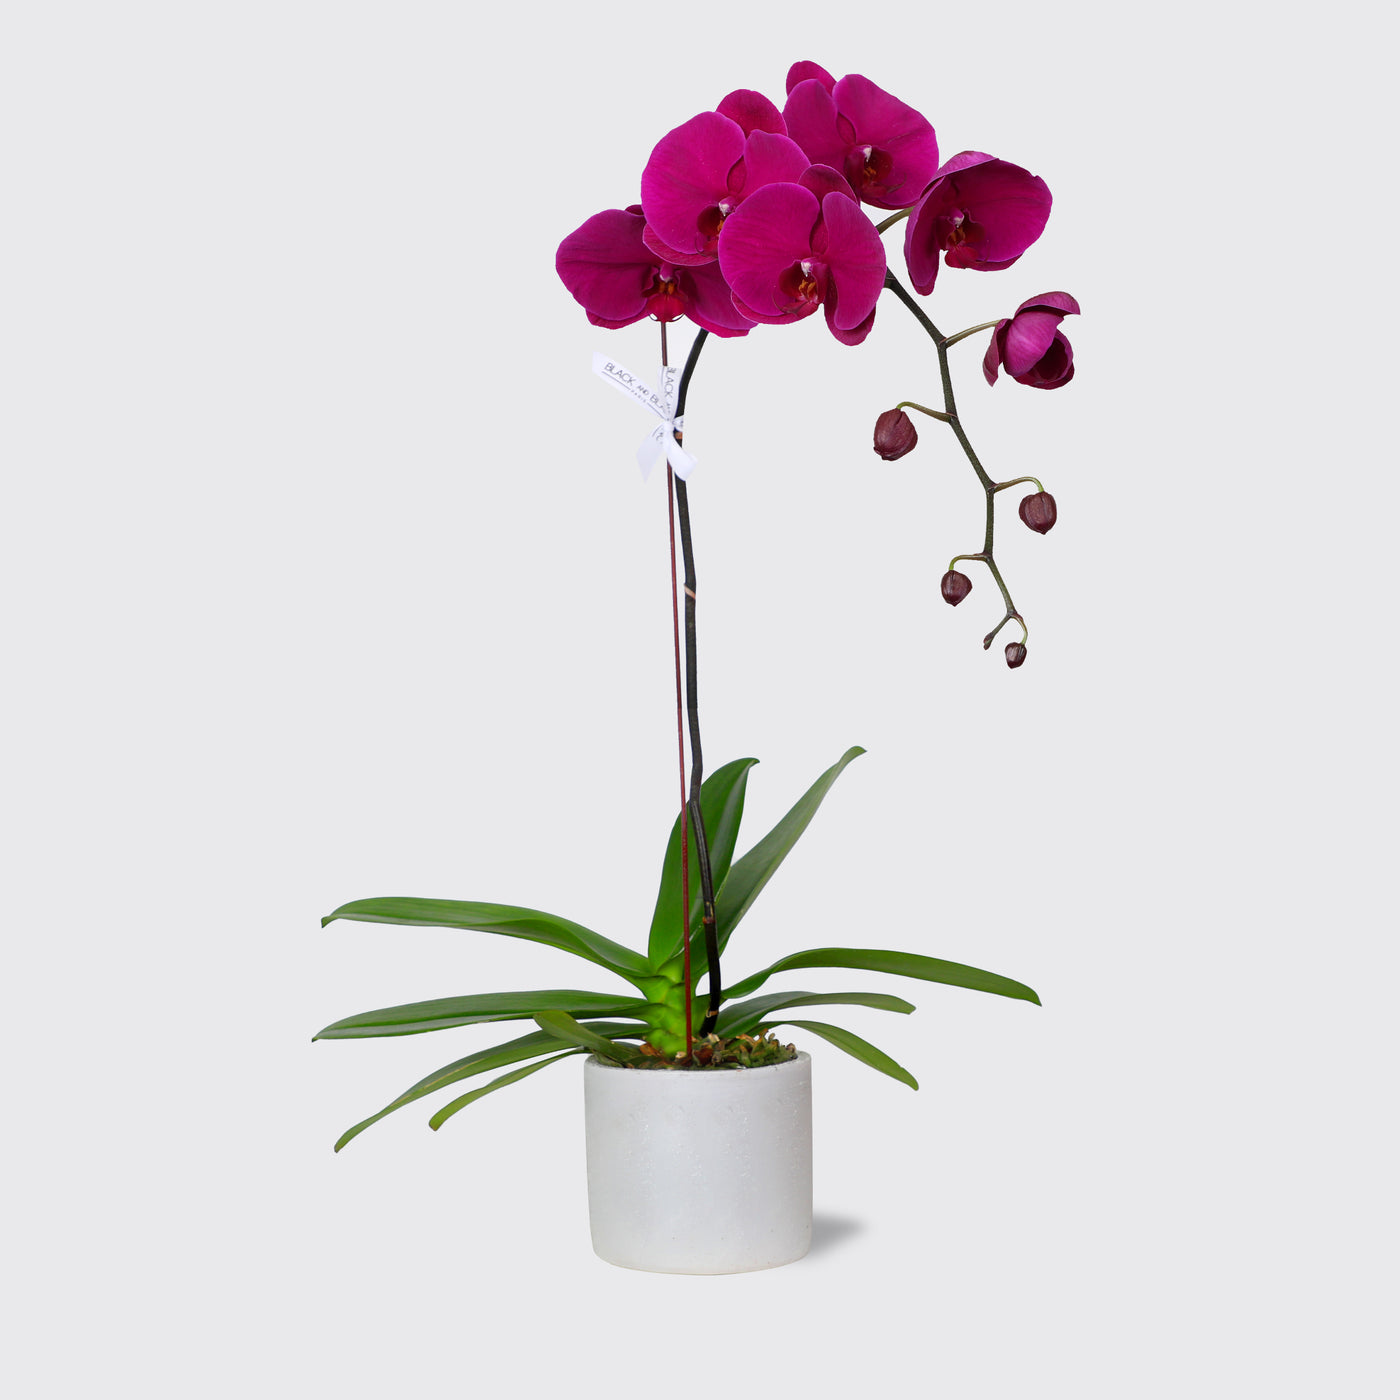 Purple Orchidées in Vase - Fresh Flowers